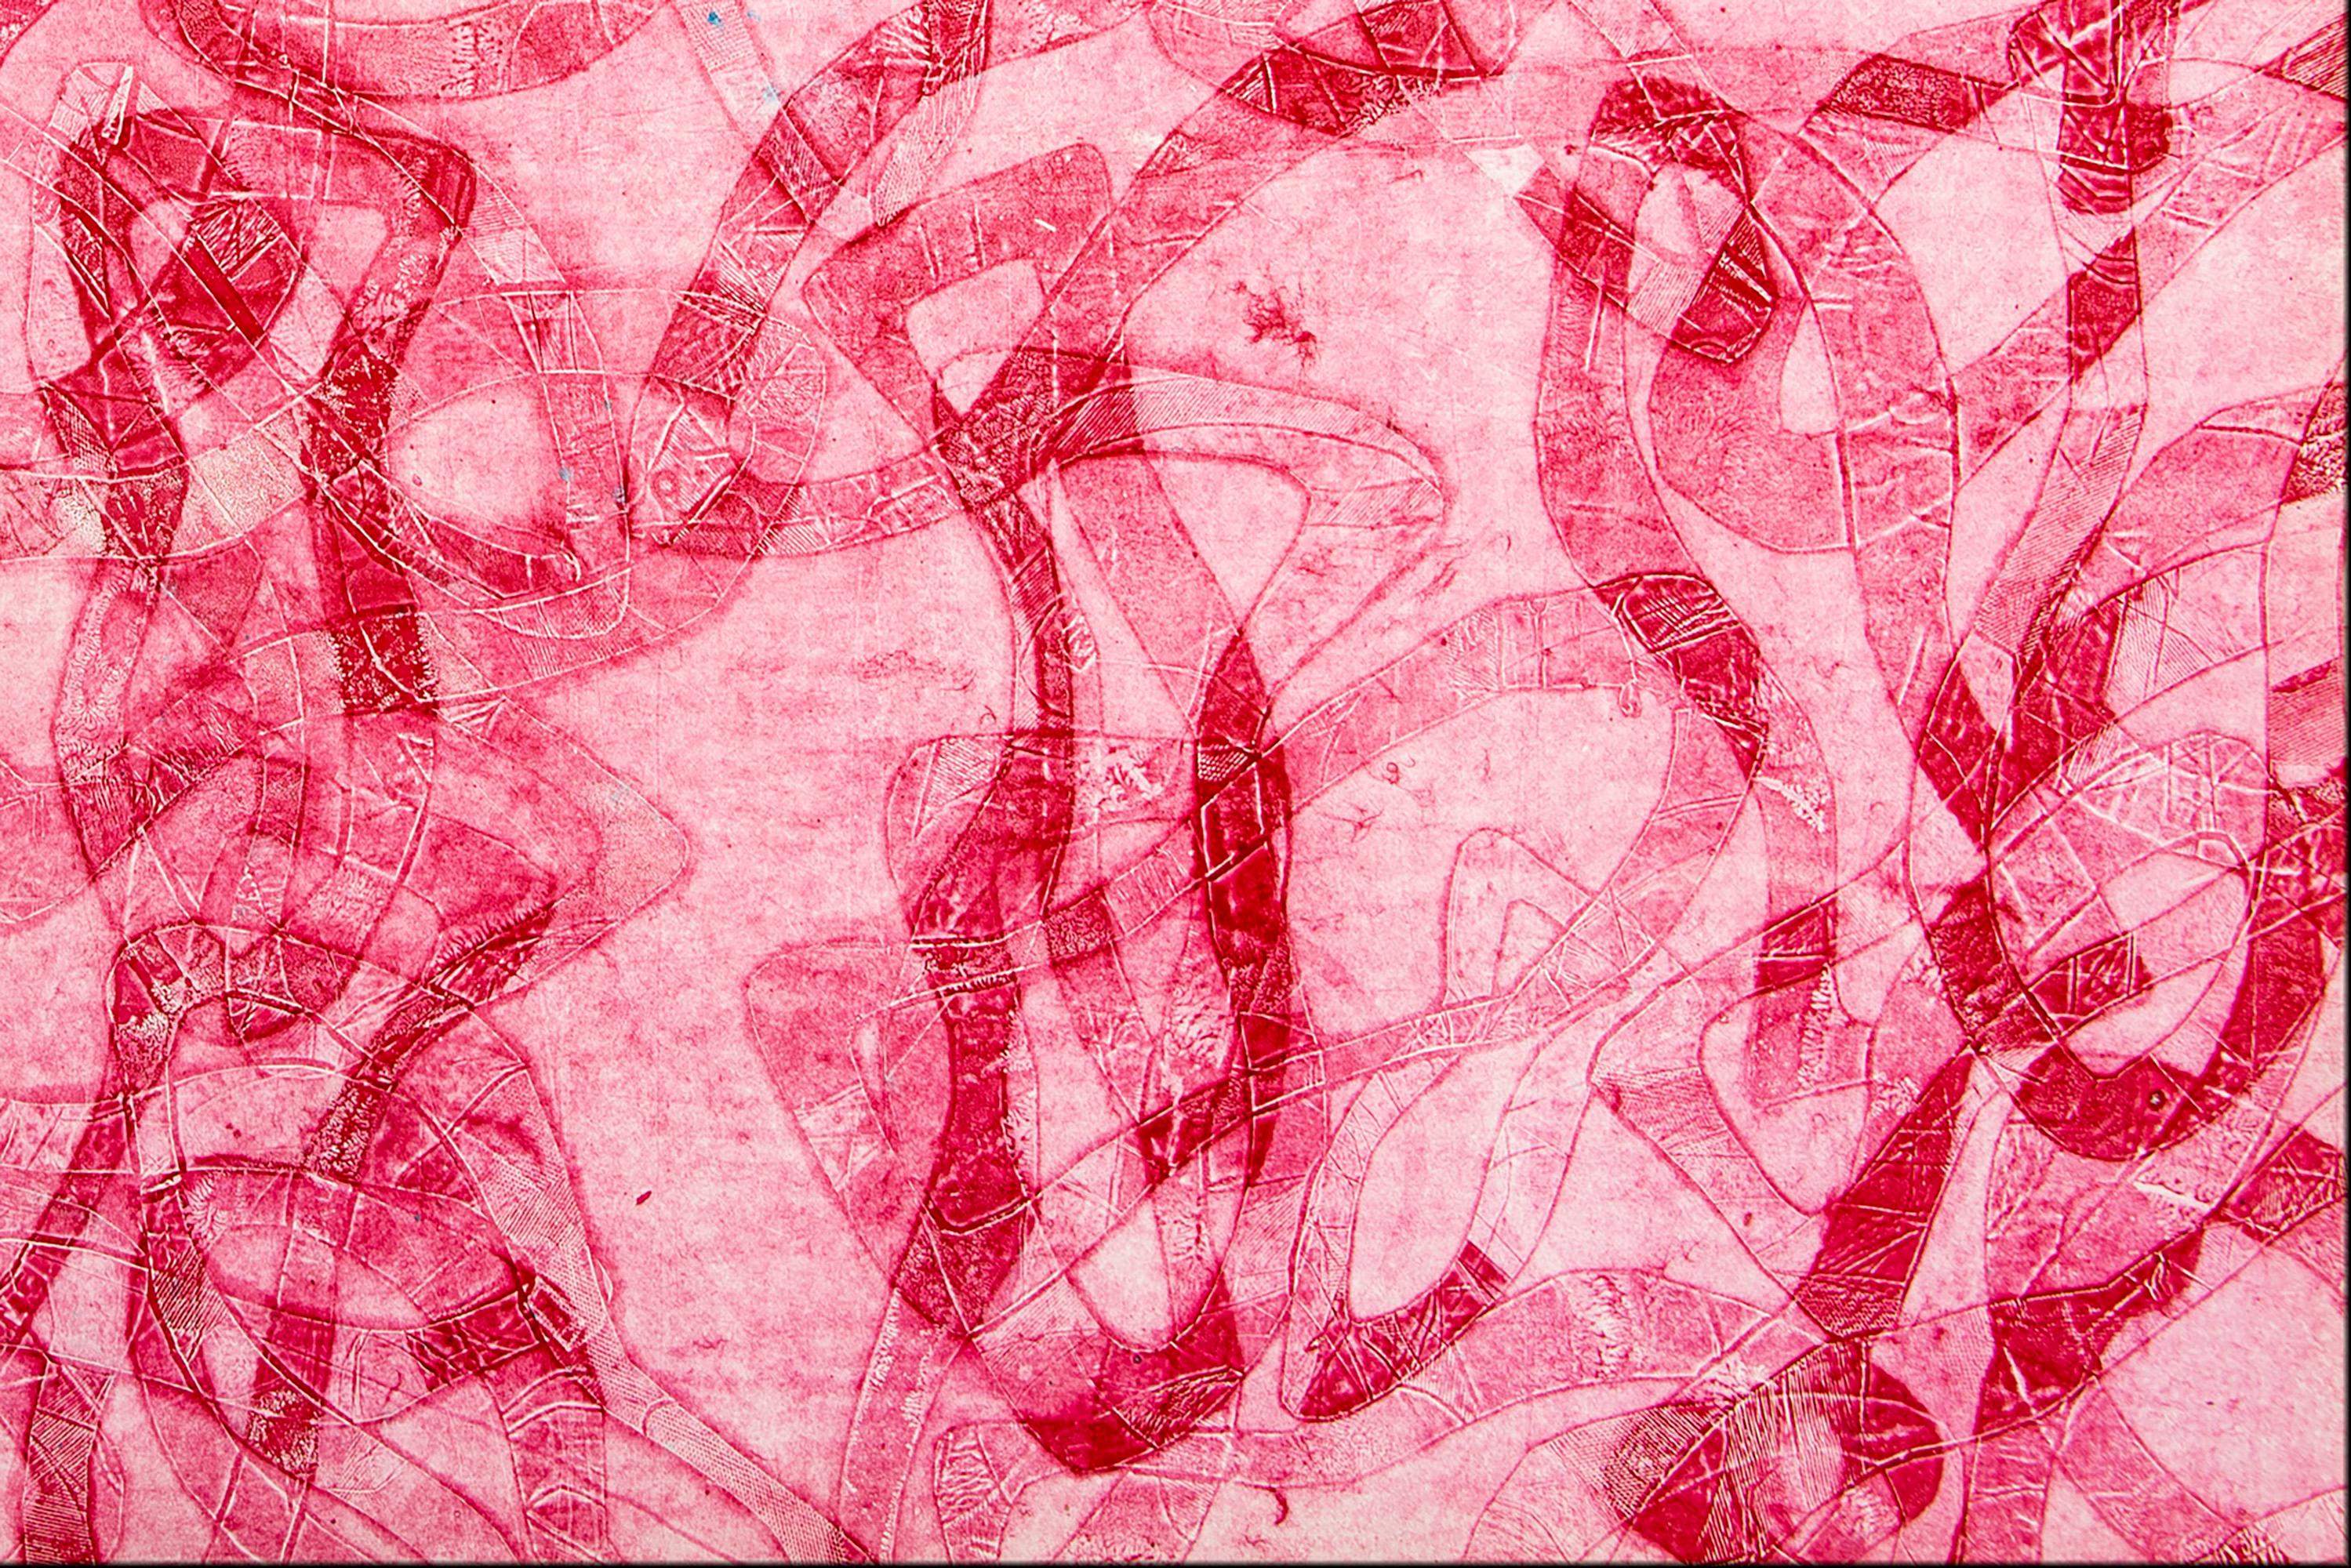 Tonalité rouge, peinture figurative abstraite représentant des poissons des mers rouges sur papier  3